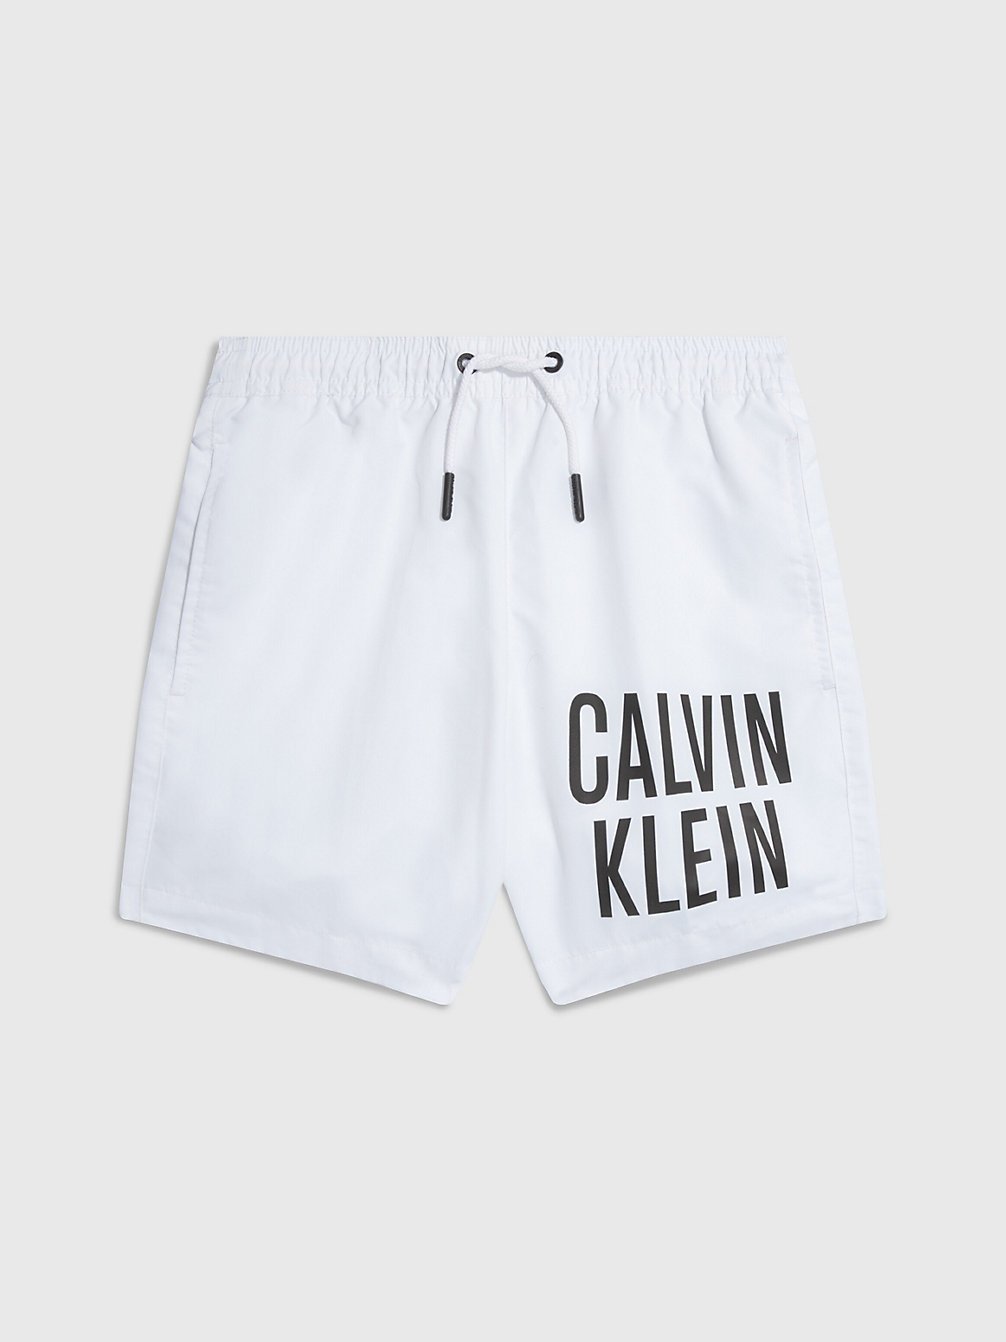 PVH CLASSIC WHITE > Jongenszwemshort - Intense Power > undefined jongens - Calvin Klein